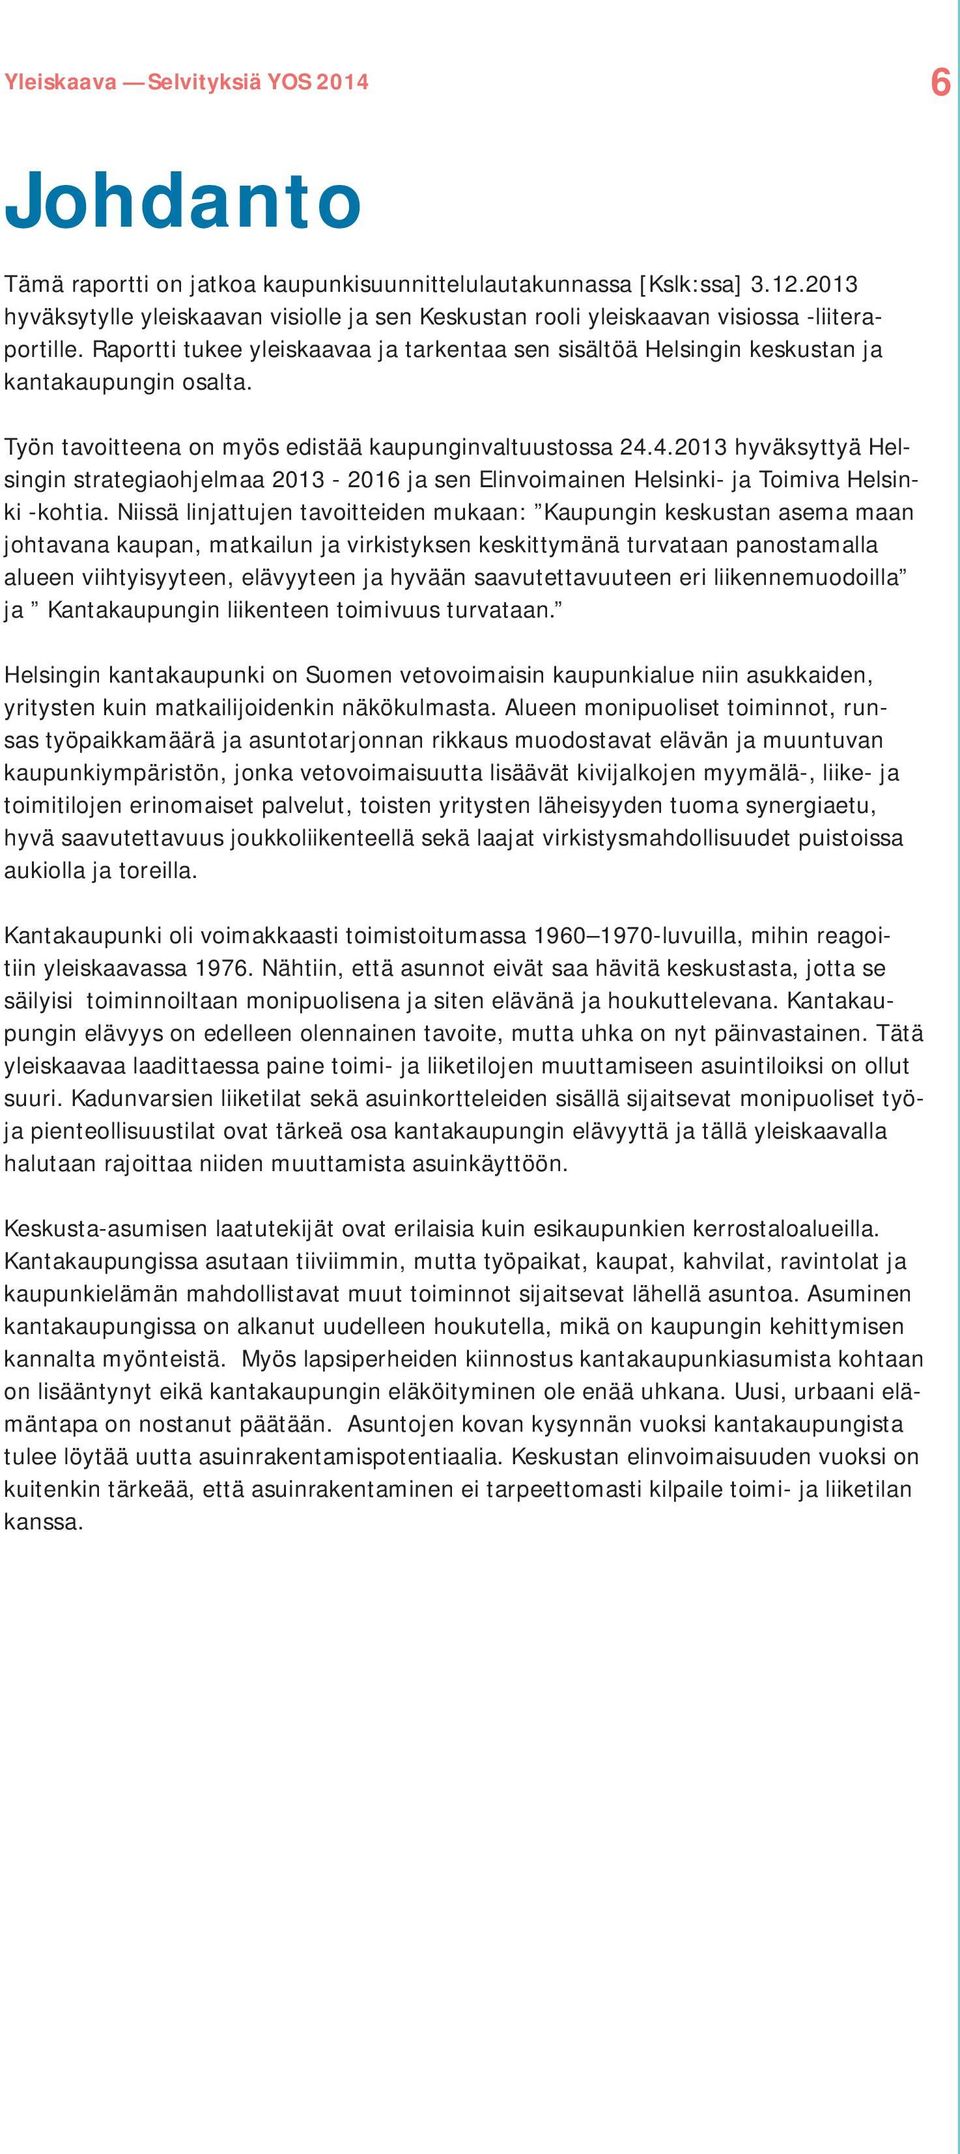 4.2013 hyväksyttyä Helsingin strategiaohjelmaa 2013-2016 ja sen Elinvoimainen Helsinki- ja Toimiva Helsinki -kohtia.